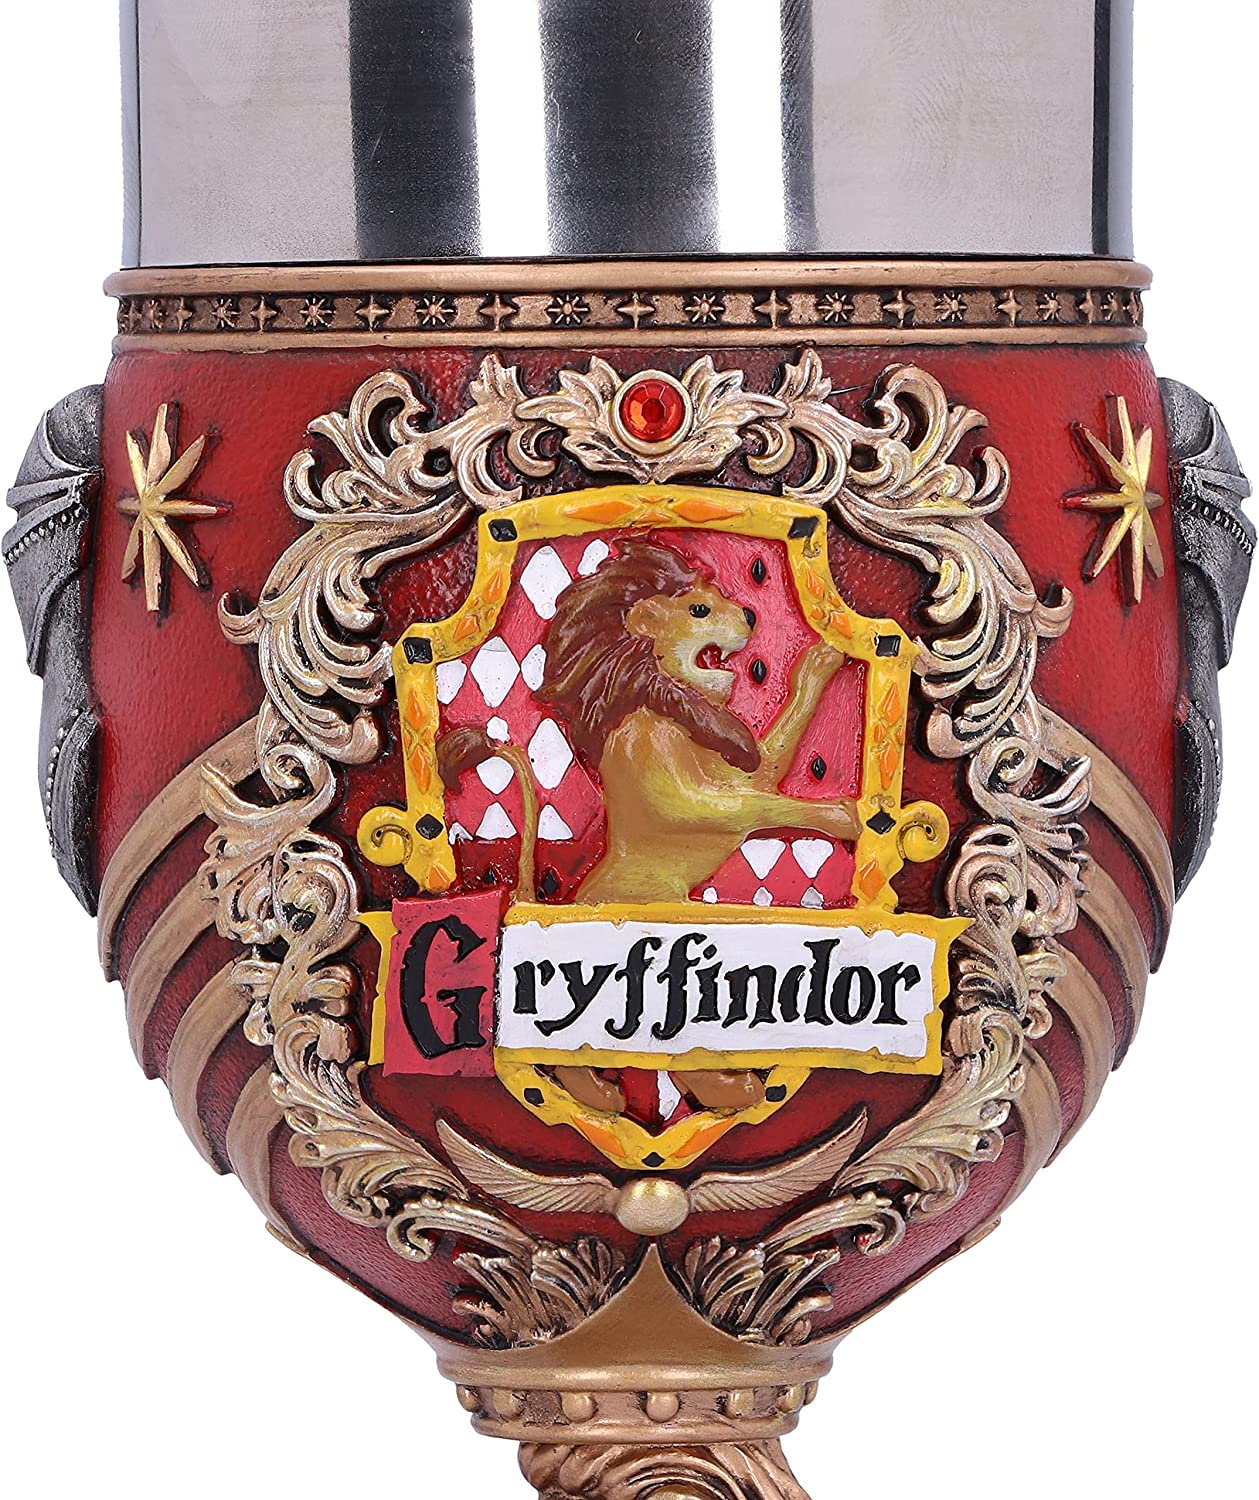 Harry Potter - Coupe à collectionner Gryffondor 19.5cm